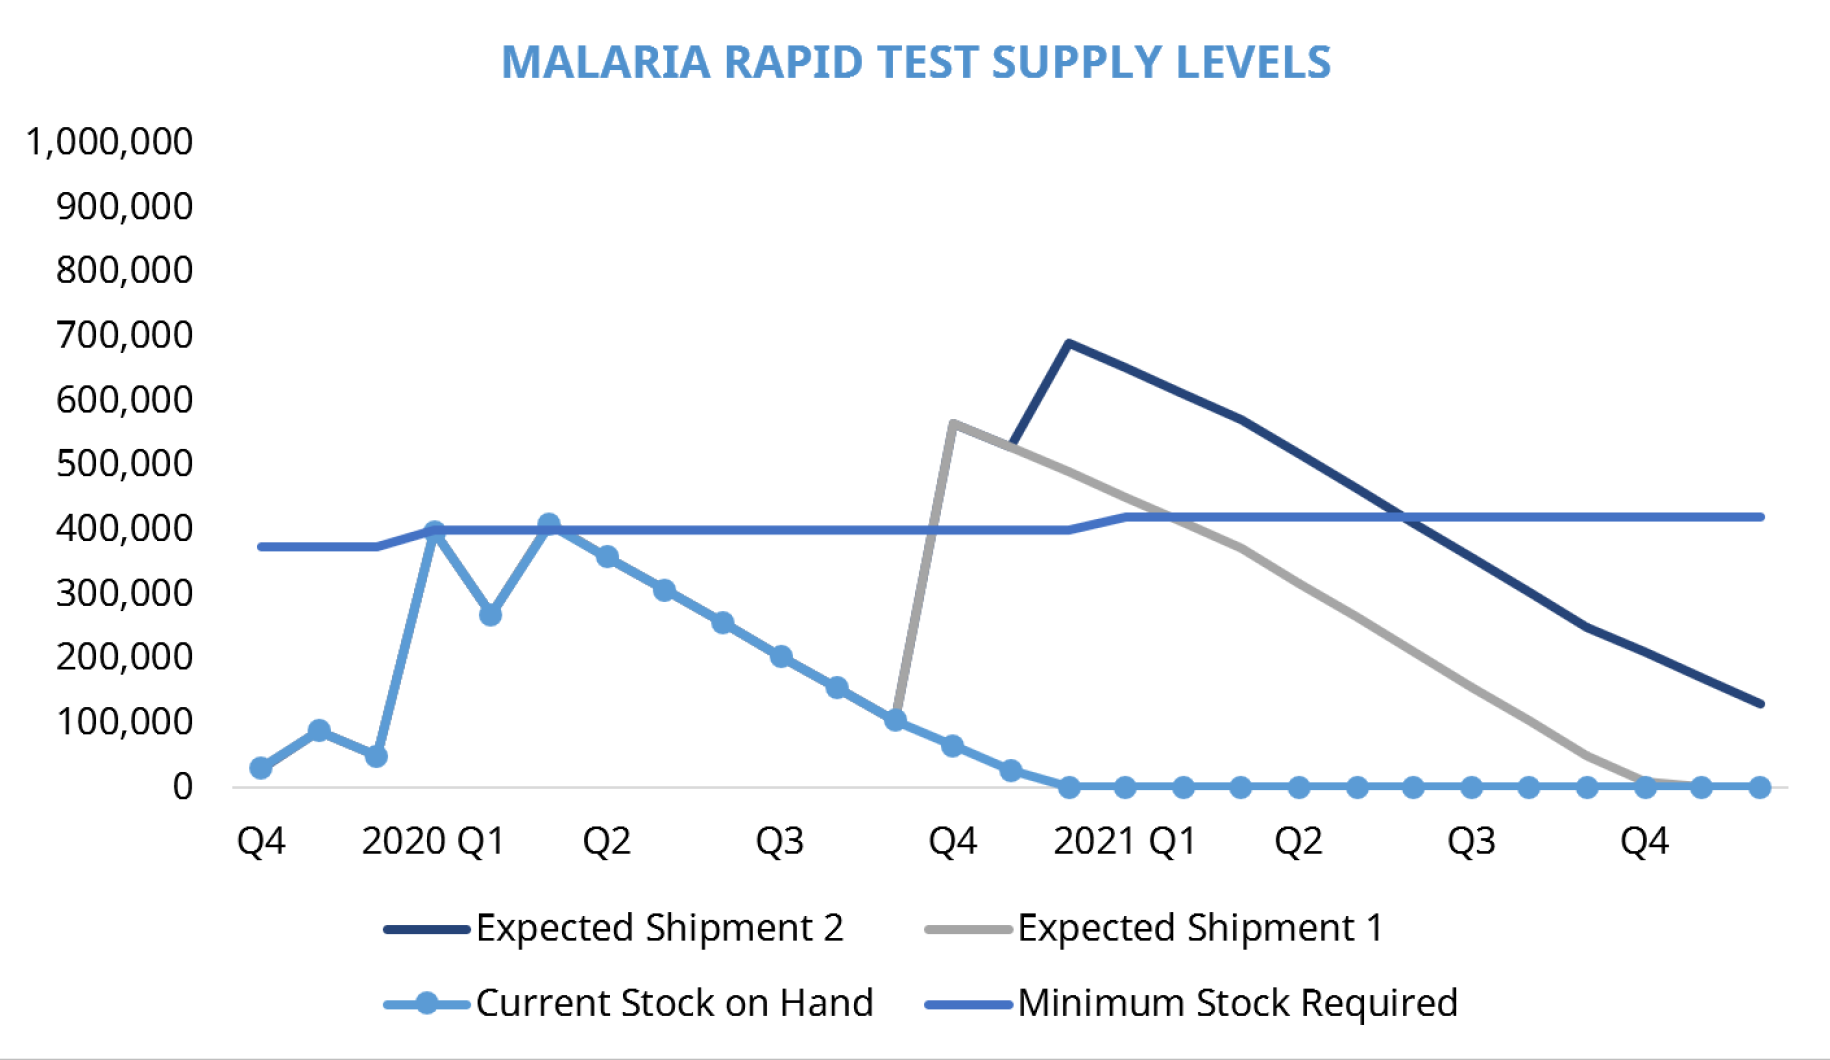 Datos sobre los niveles de suministro de pruebas de malaria en la República Democrática Popular Lao después del envío en el segundo trimestre de 2020.